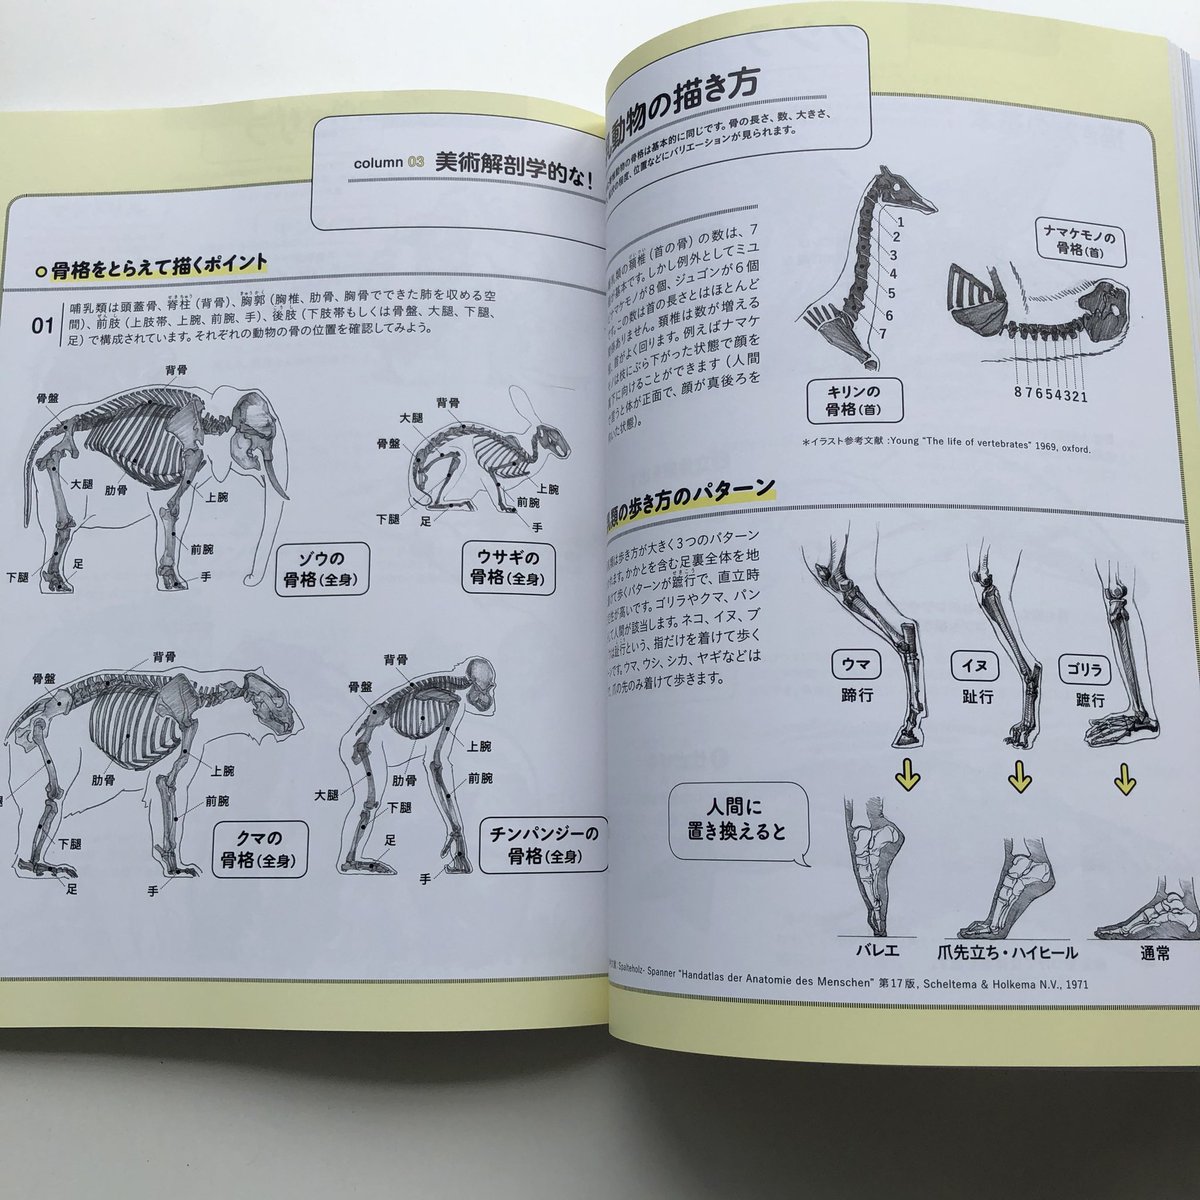 伊豆の美術解剖学者 内藤貞夫 動物を描こう 玄光社 に動物解剖学のコラムを書かせていただきました 黄色い縁取りのページ 動物スケッチの入門書とのことで 動物の美術解剖学に触れるきっかけになっていただけたら幸いです